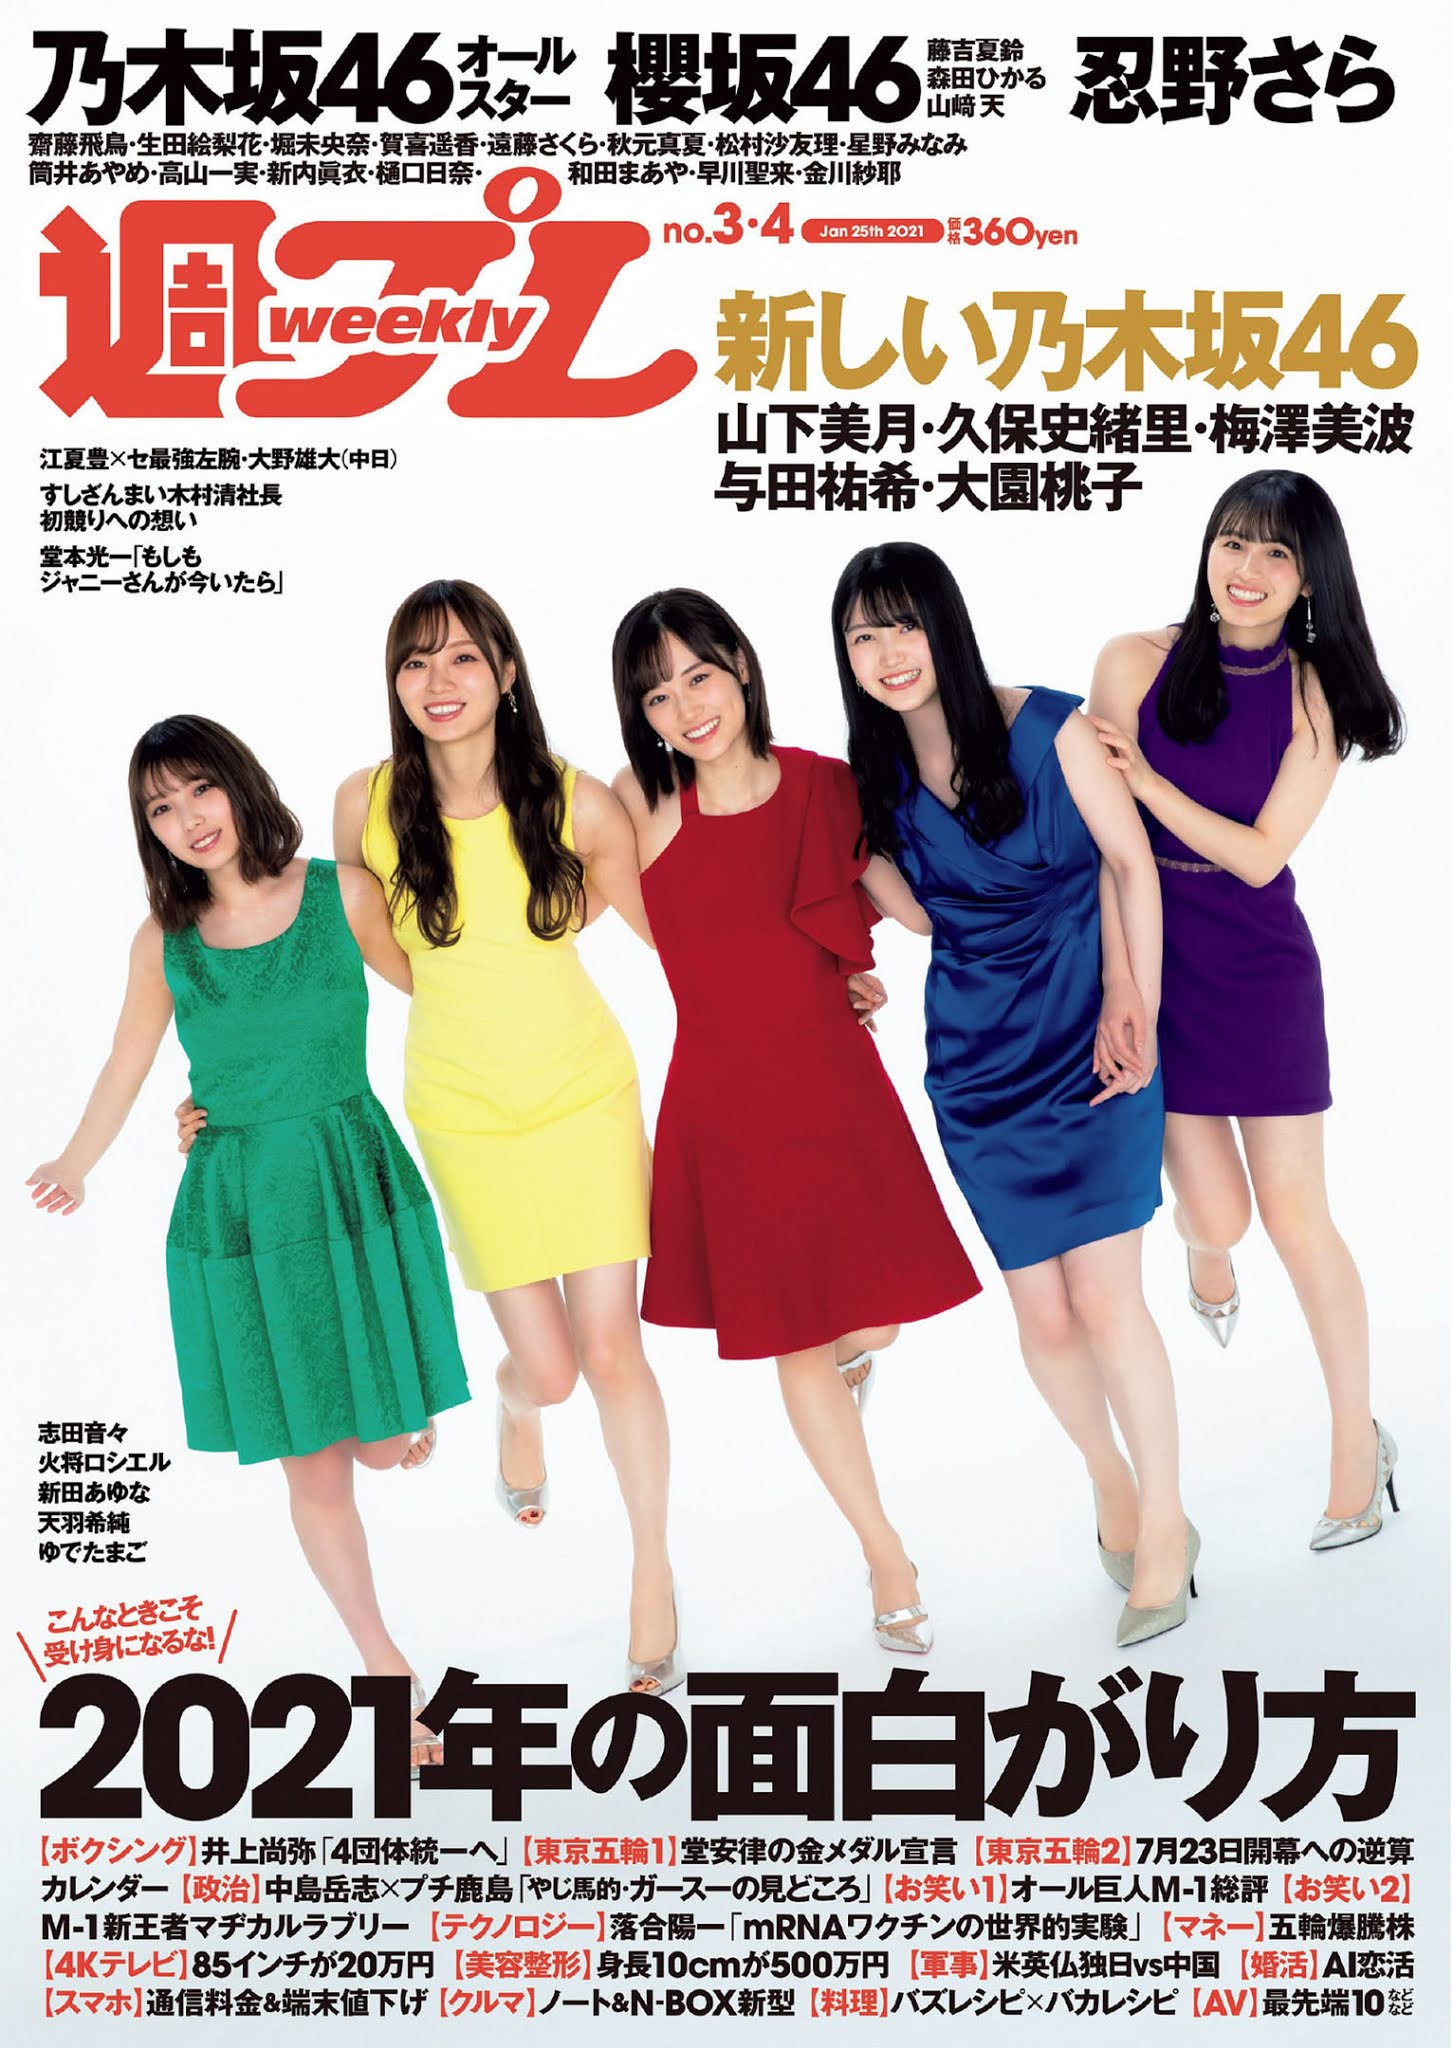 Nogizaka46 乃木坂46, Weekly Playboy 2021 No.03-04 (週刊プレイボーイ 2021年3-4号)